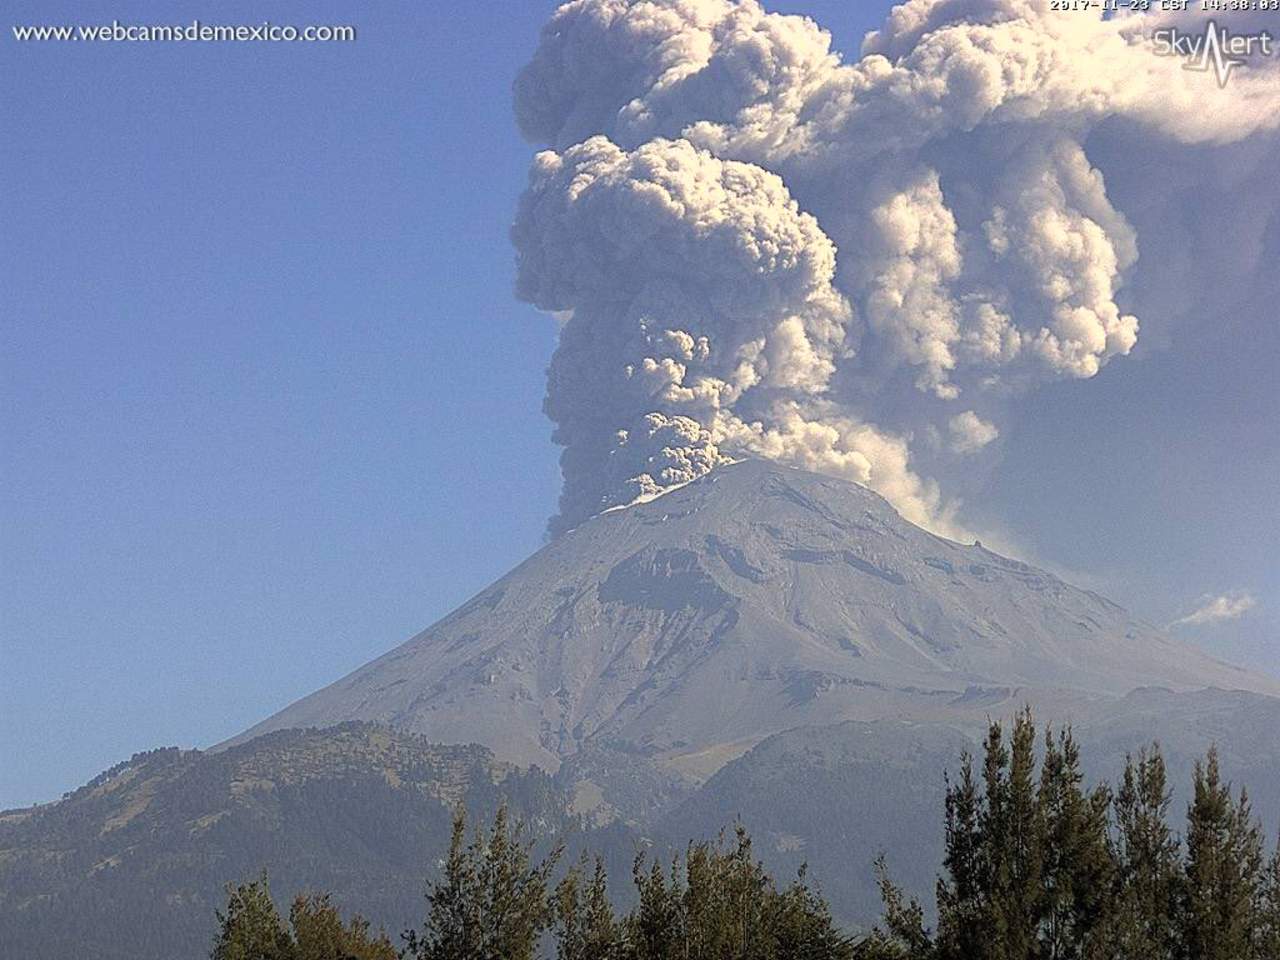 El evento pudo registrarse desde la estación Tlamacas, ubicada a 4.5 kilómetros de distancia del volcán y de Altzomoni, a 12 kilómetros. (WEBCAMS DE MÉXICO)